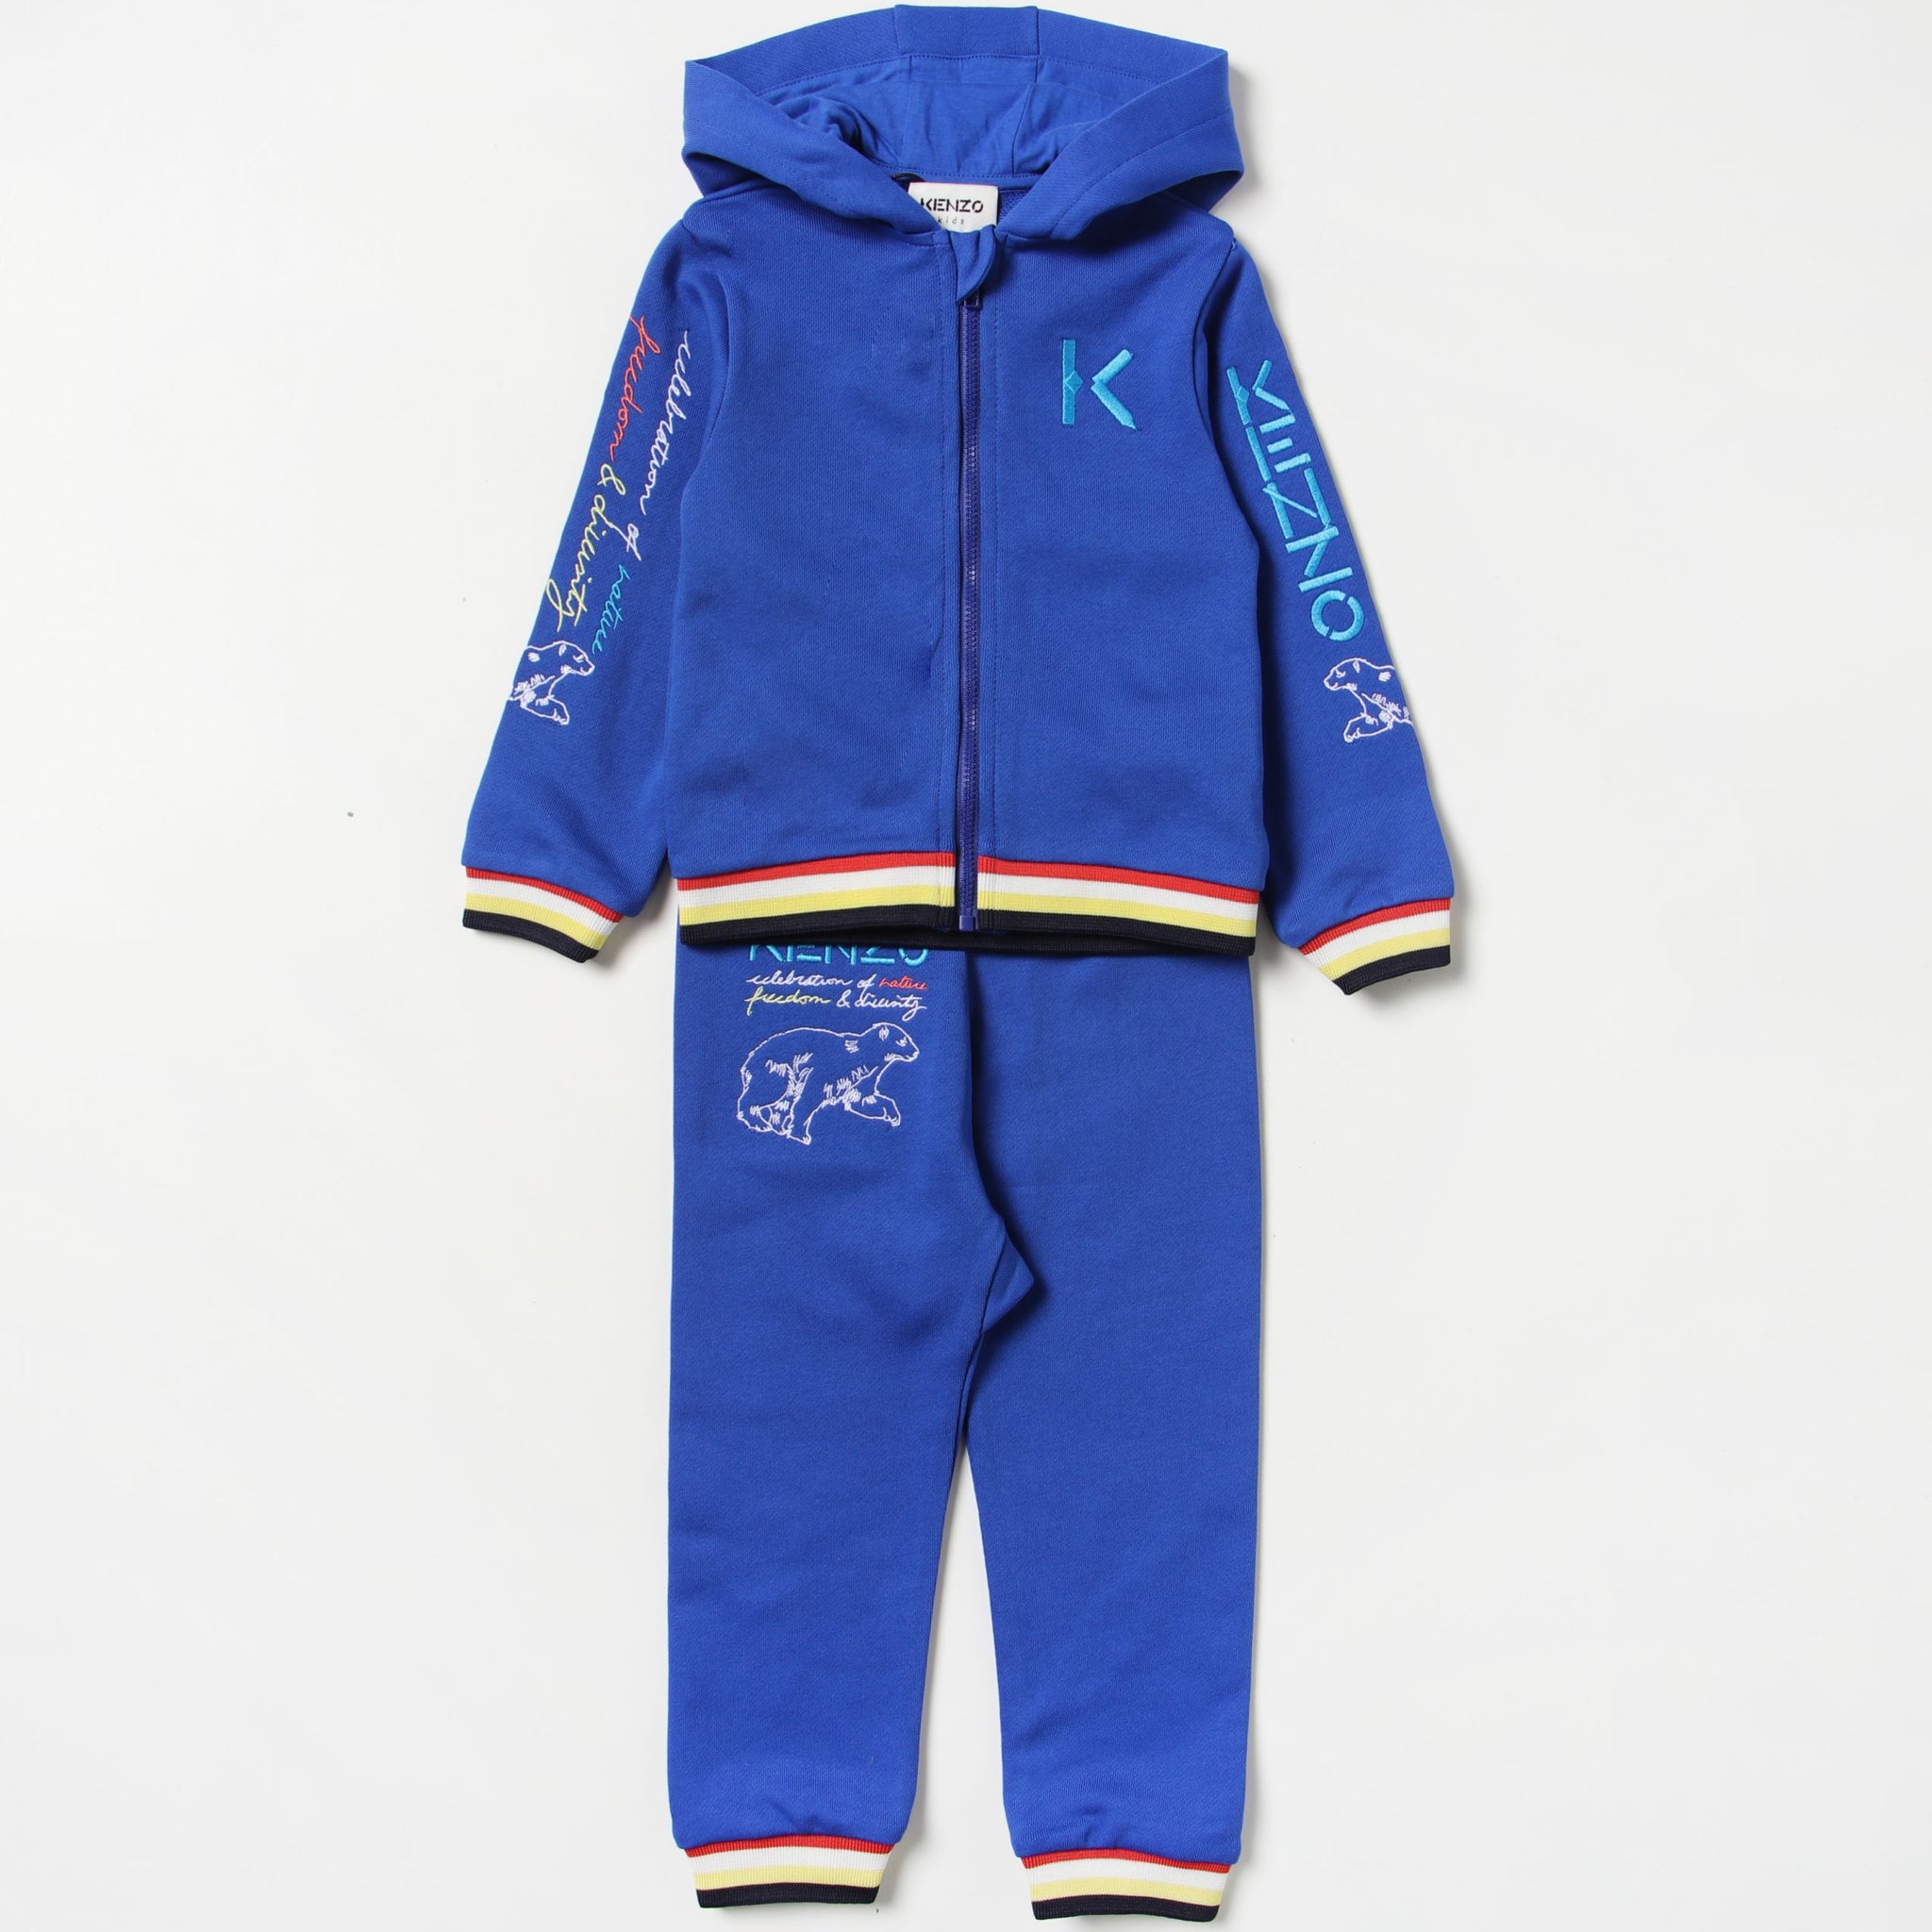 Kenzo Kid's Jogging Suit - Color: Blue - Kids Premium Clothing -